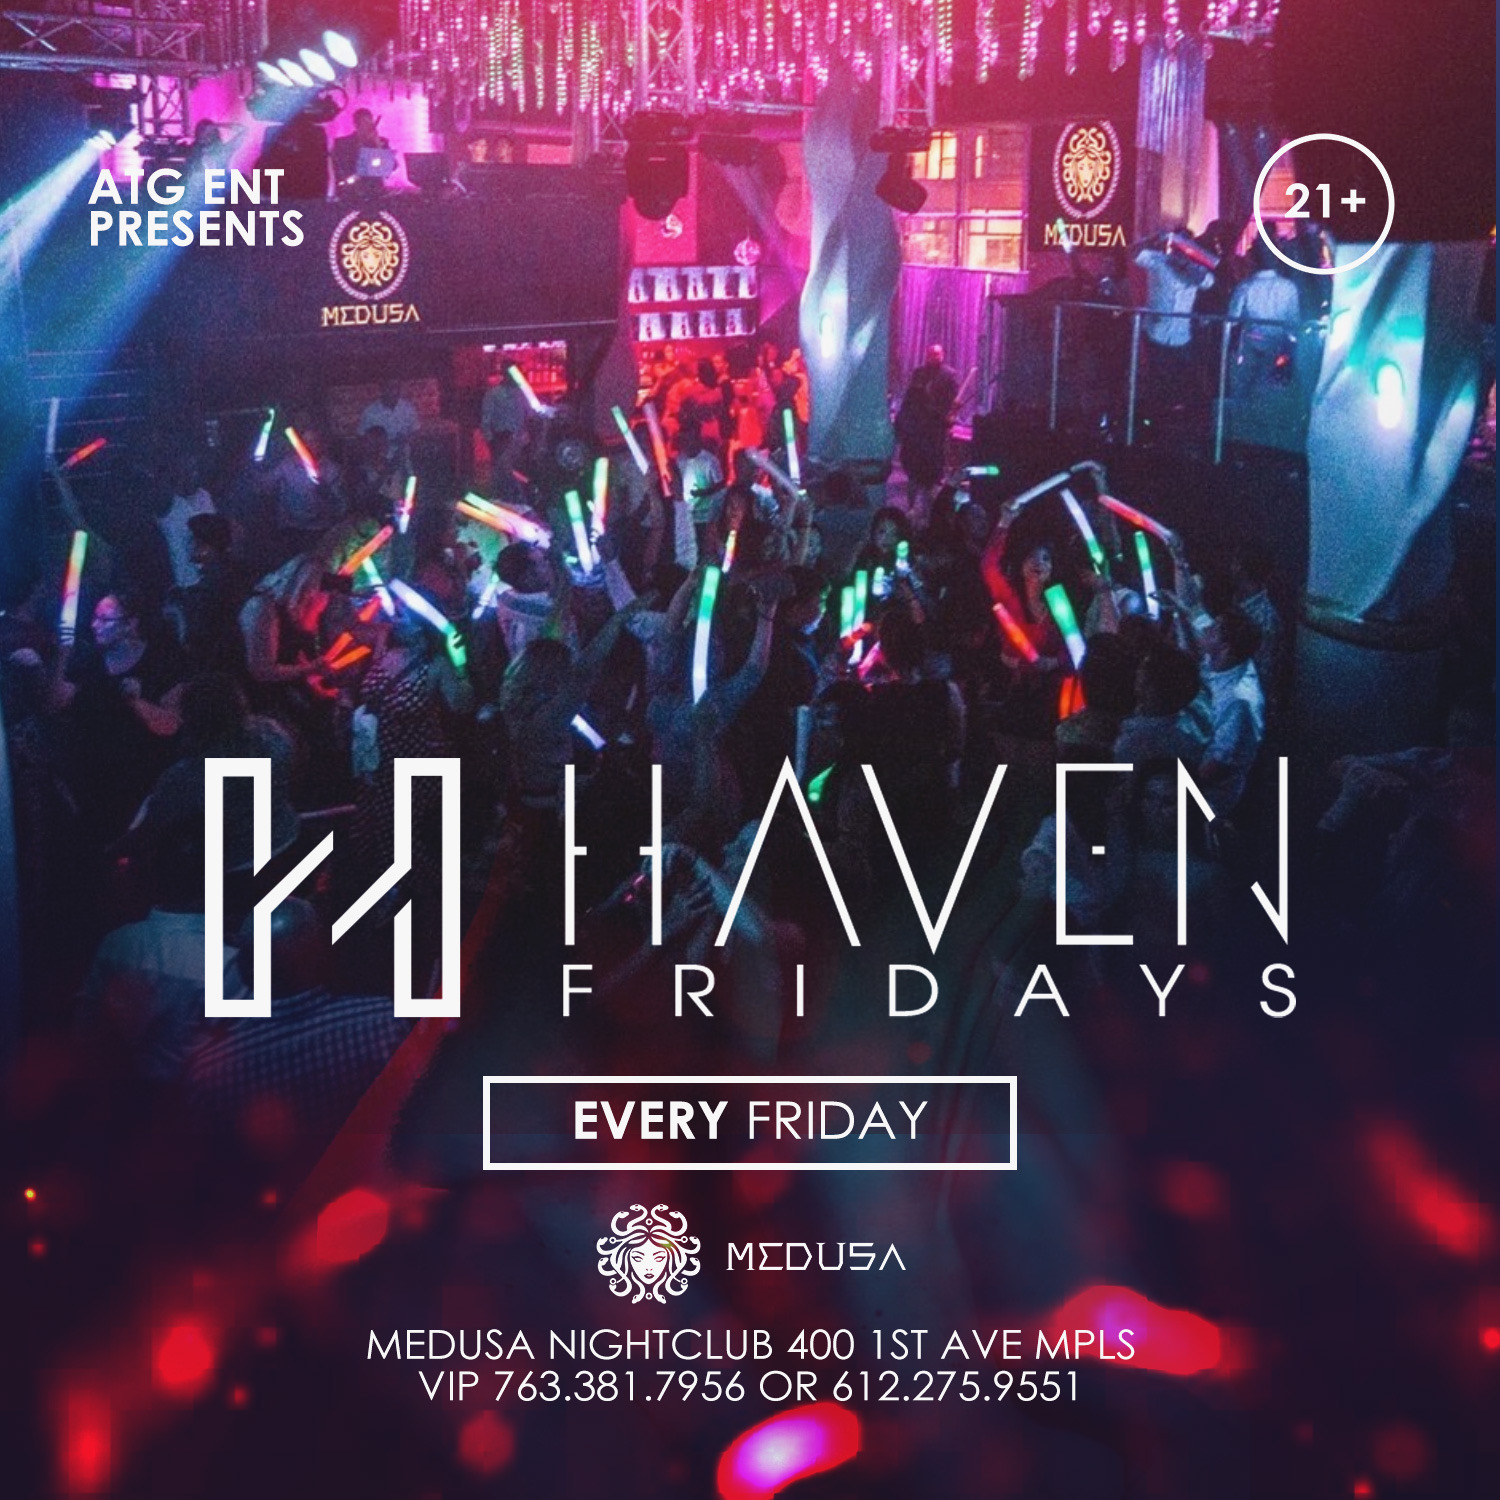 Haven Friday's @ Medusa Nightclub - Nov 27 2020, 10:00PM